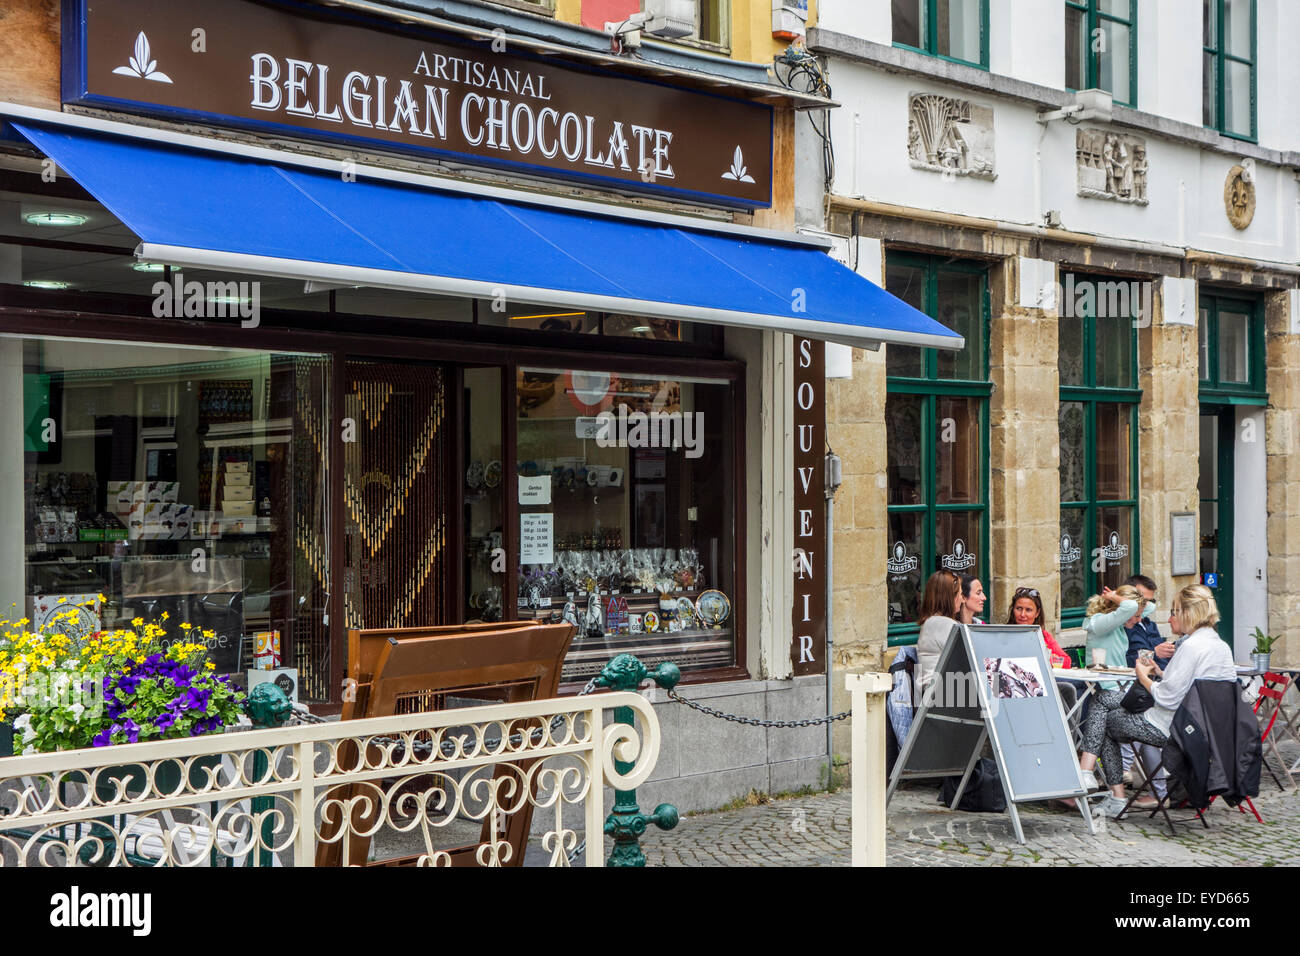 Le Chocolatier chocolat belge artisanal boutique vendant des variétés de pralines et confiseries dans la ville de Gand, Belgique Banque D'Images